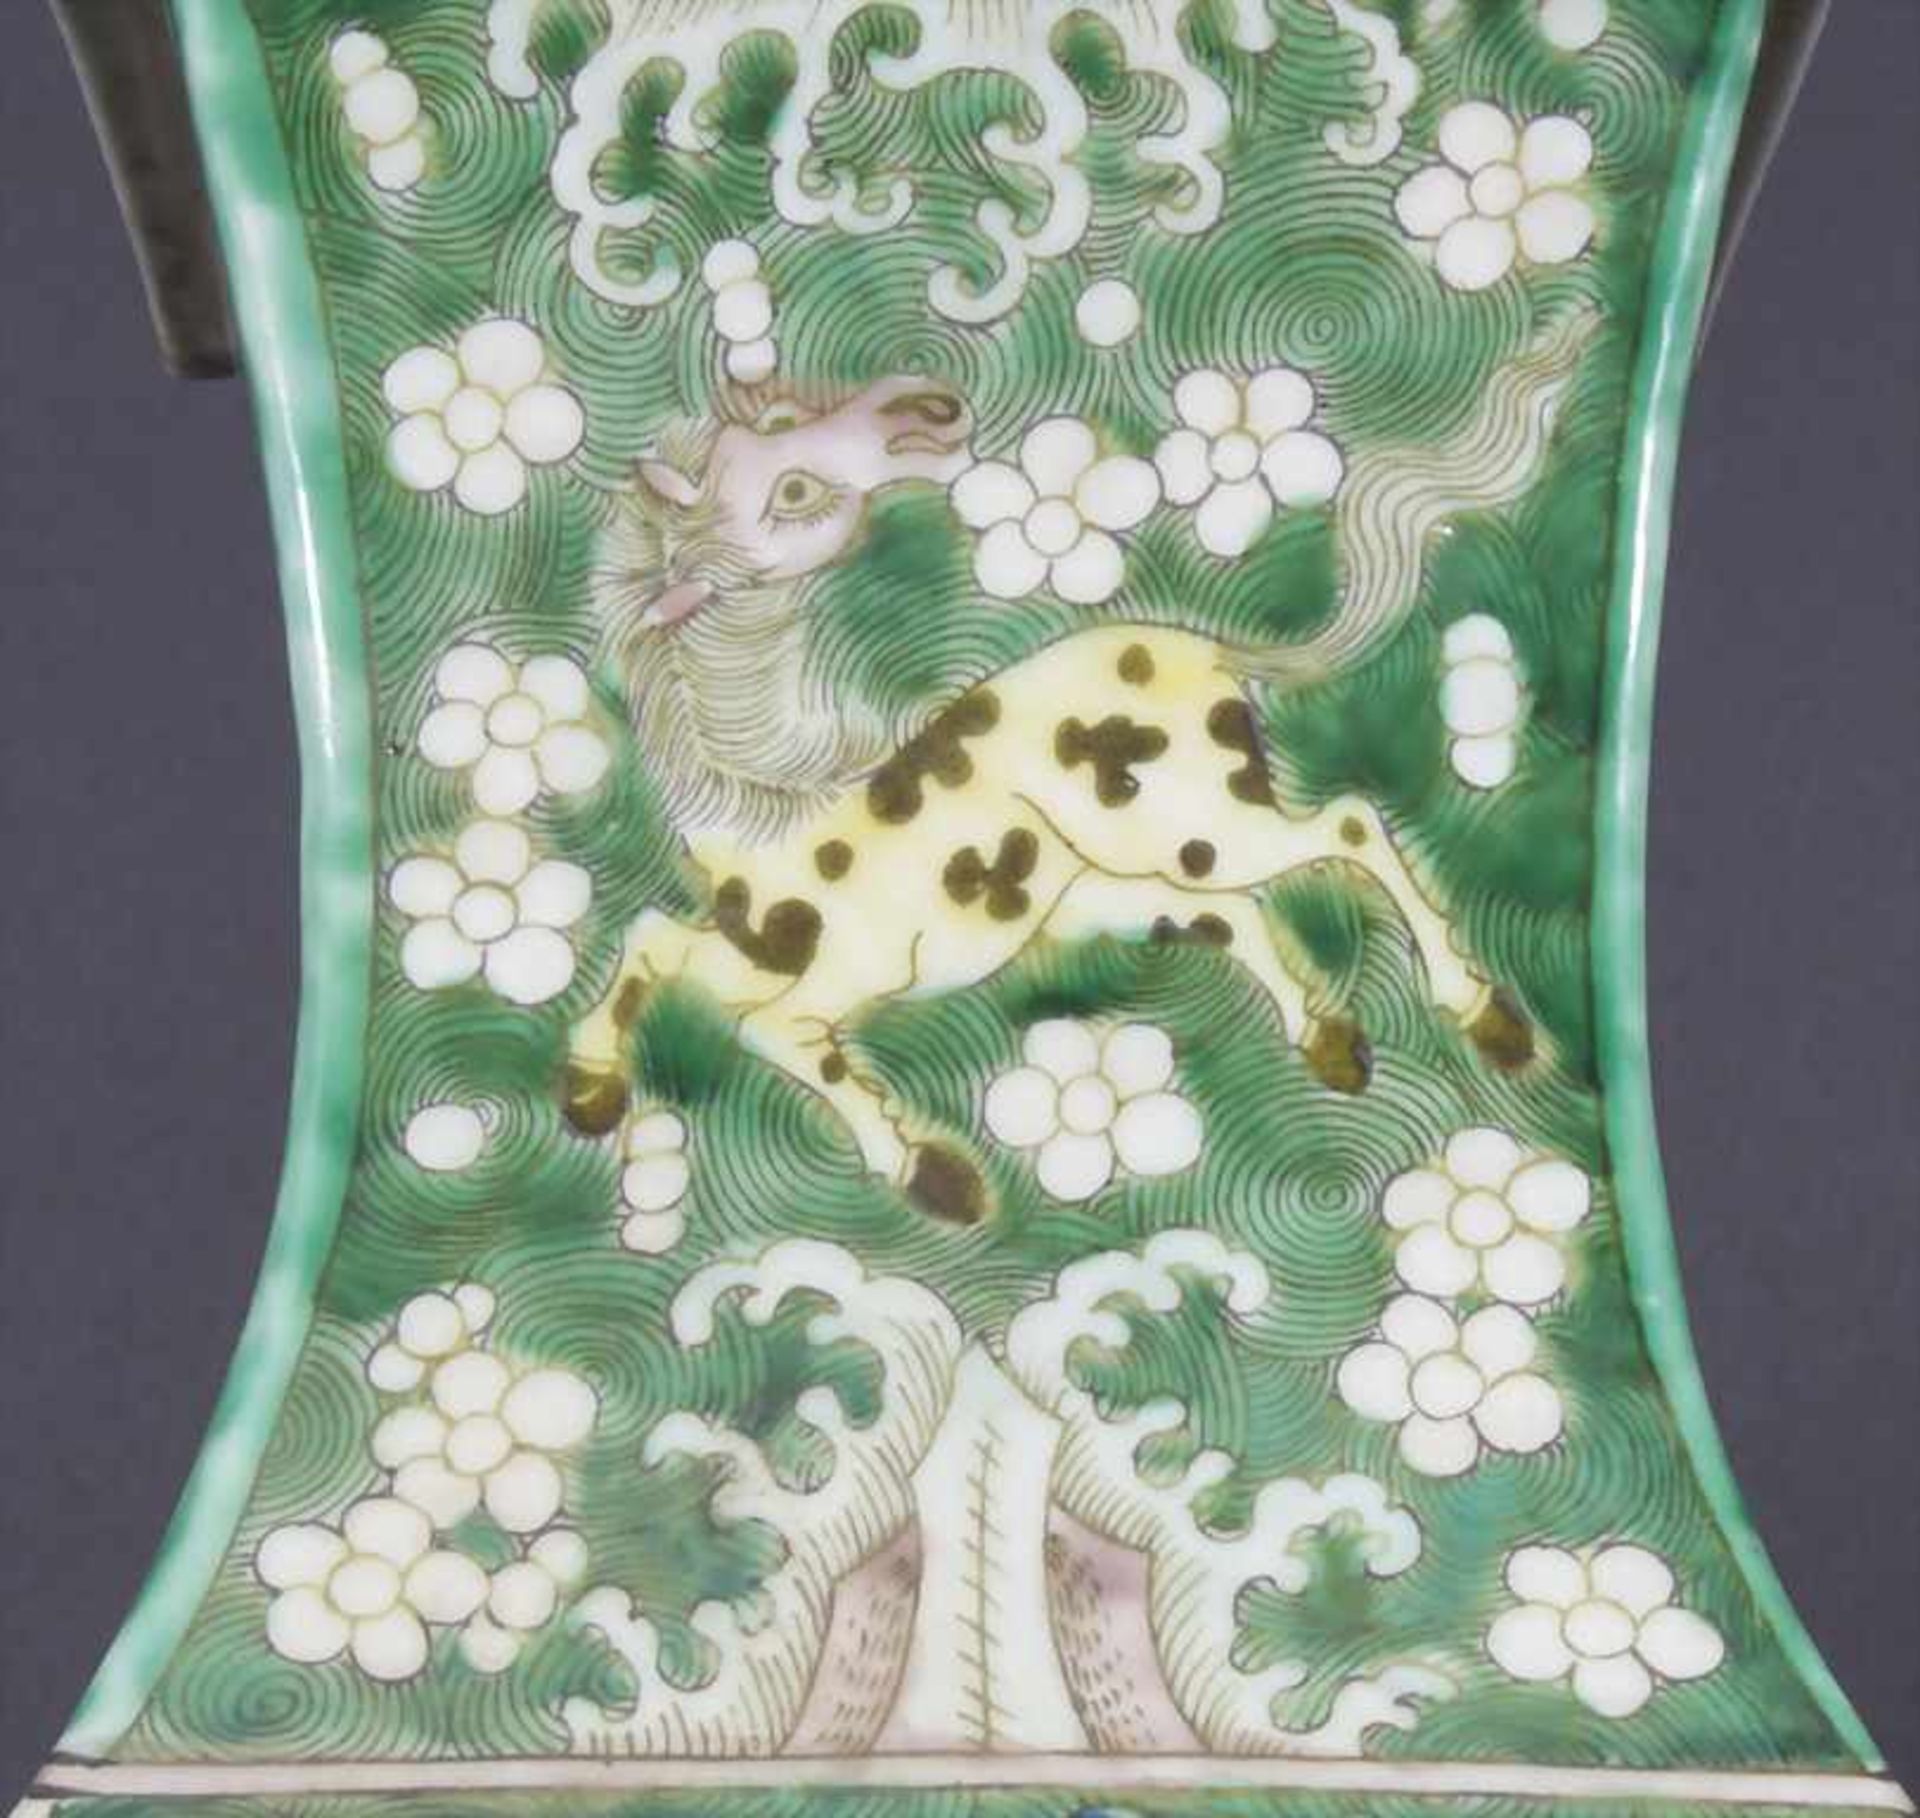 Ziervase, China, späte Qing-Dynastie, 19./20. Jh.Material: Porzellan, polychrom bemalt,Marke/ - Bild 7 aus 17